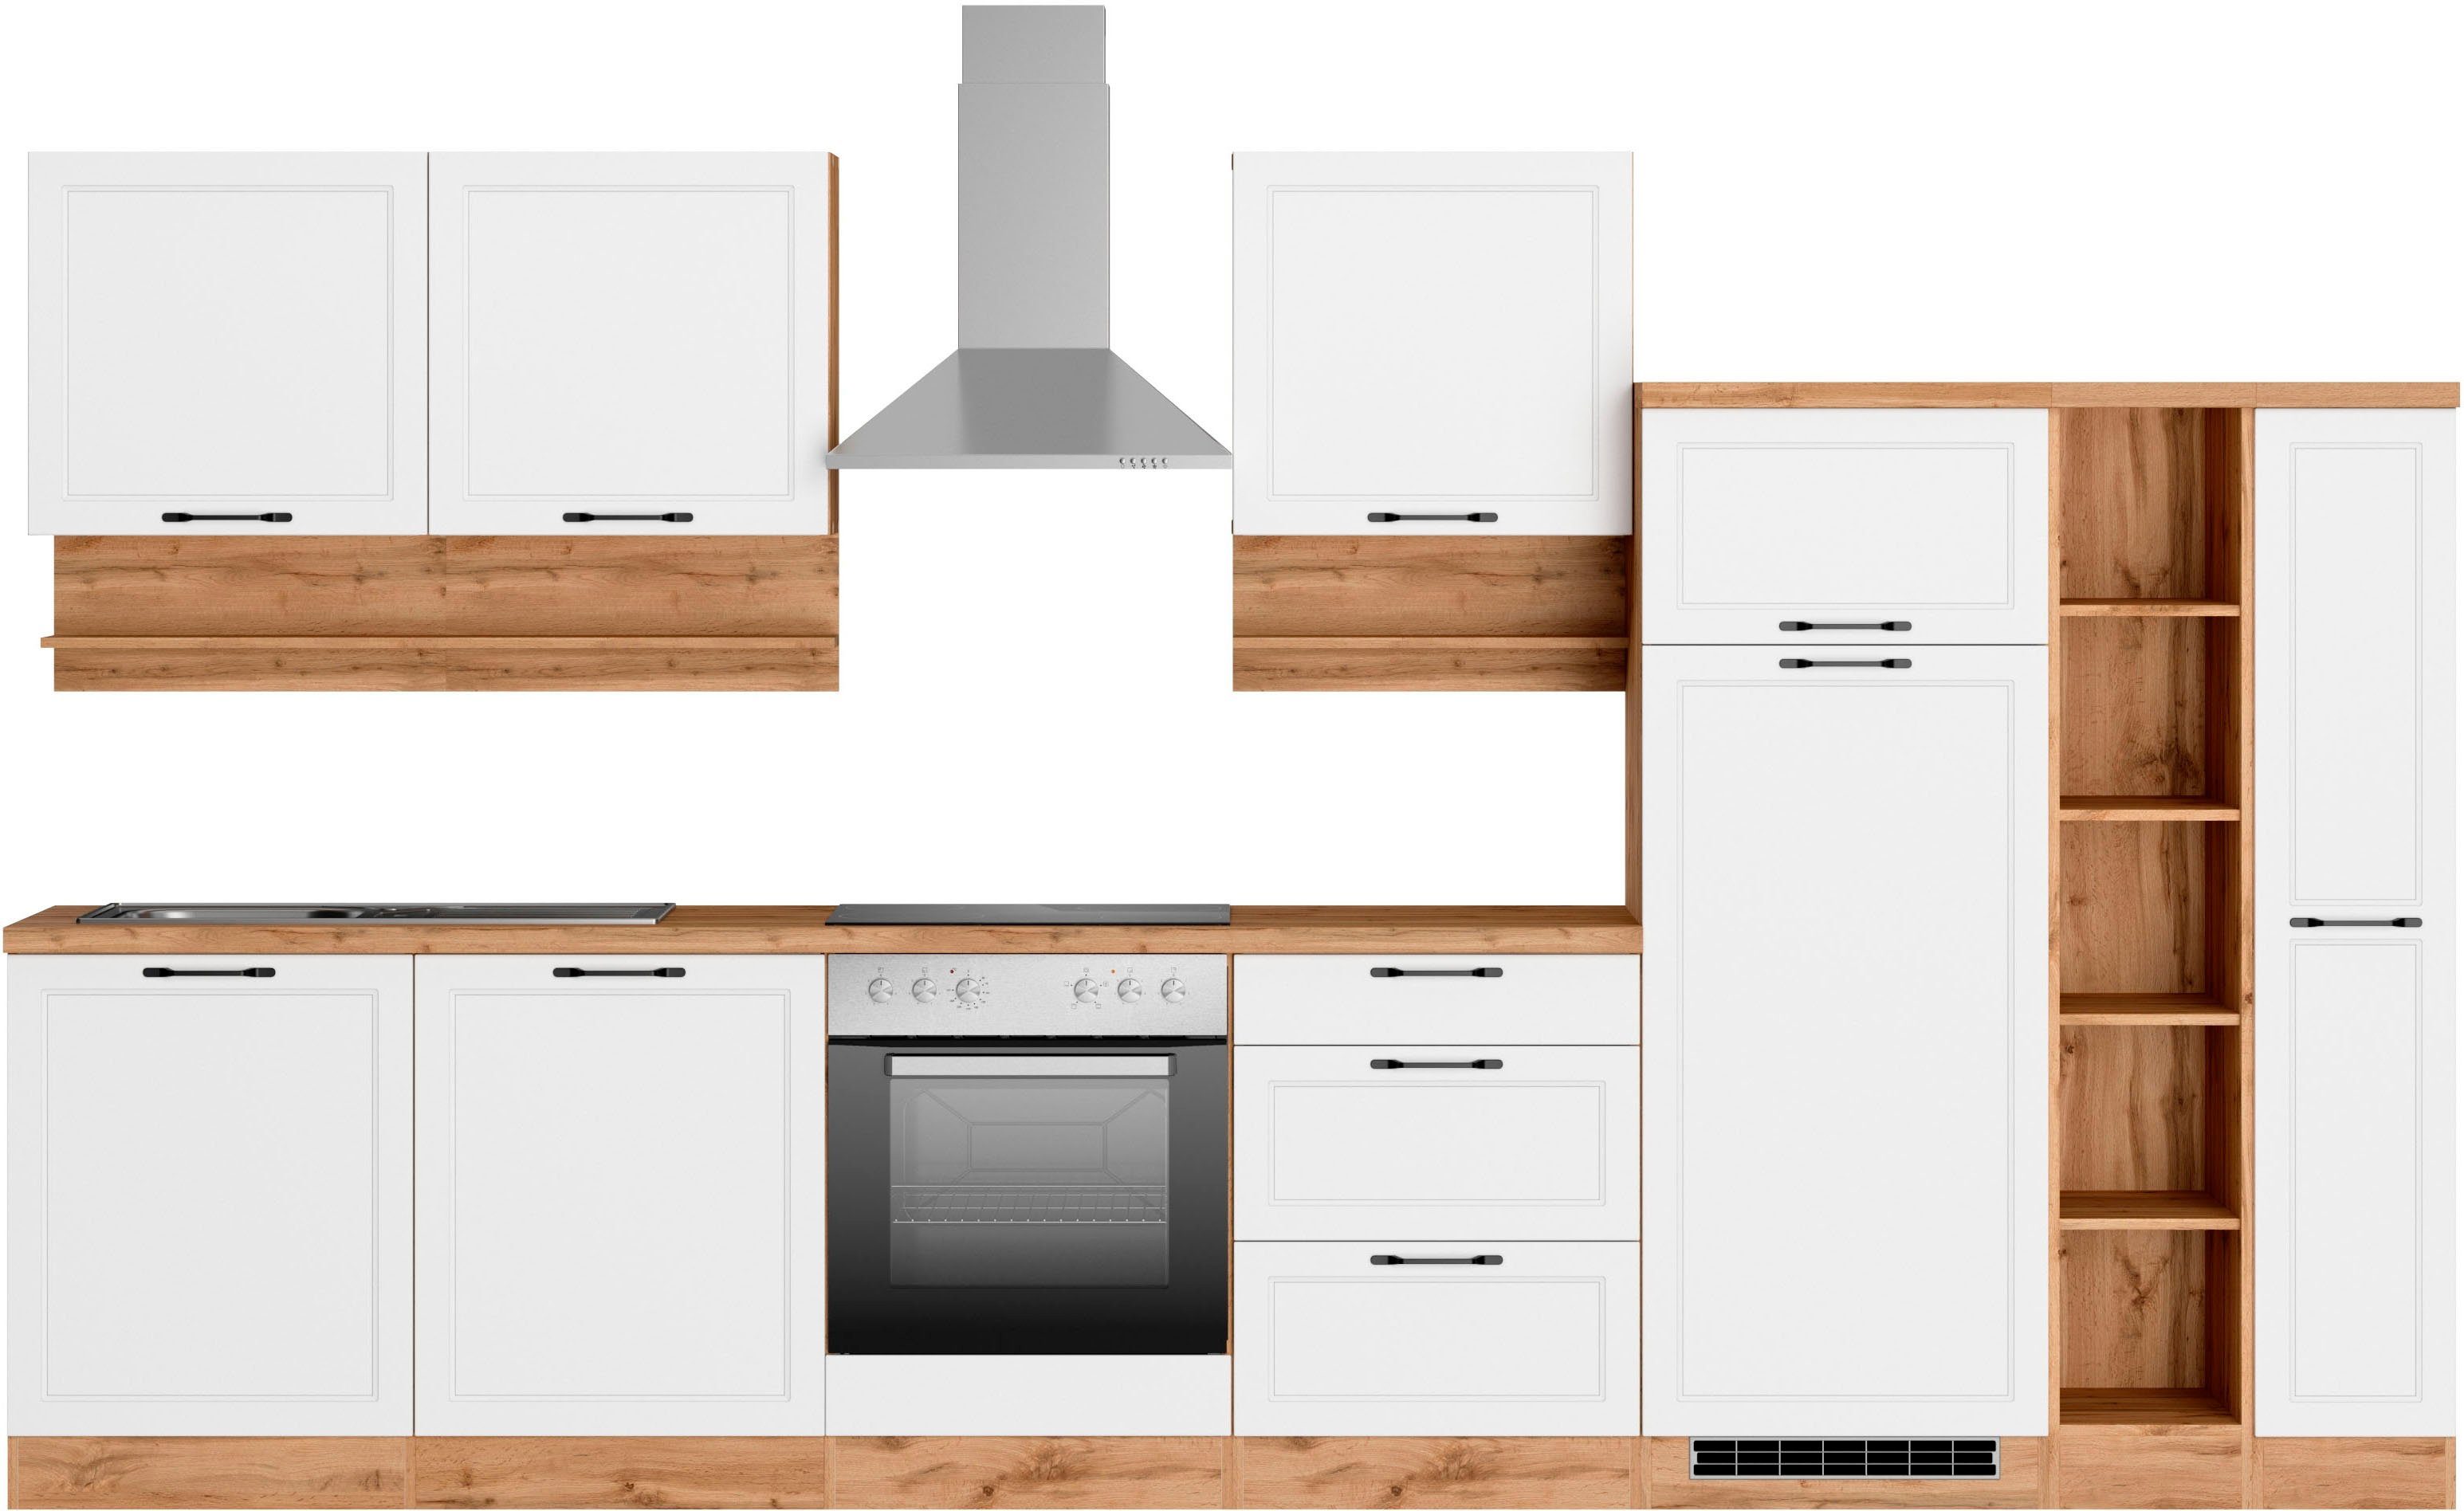 HELD MÖBEL Küche Lana, 360 cm breit, wahlweise mit oder ohne E-Geräte,  Hochwertig MDF-Fronten in modernen Landhausstil